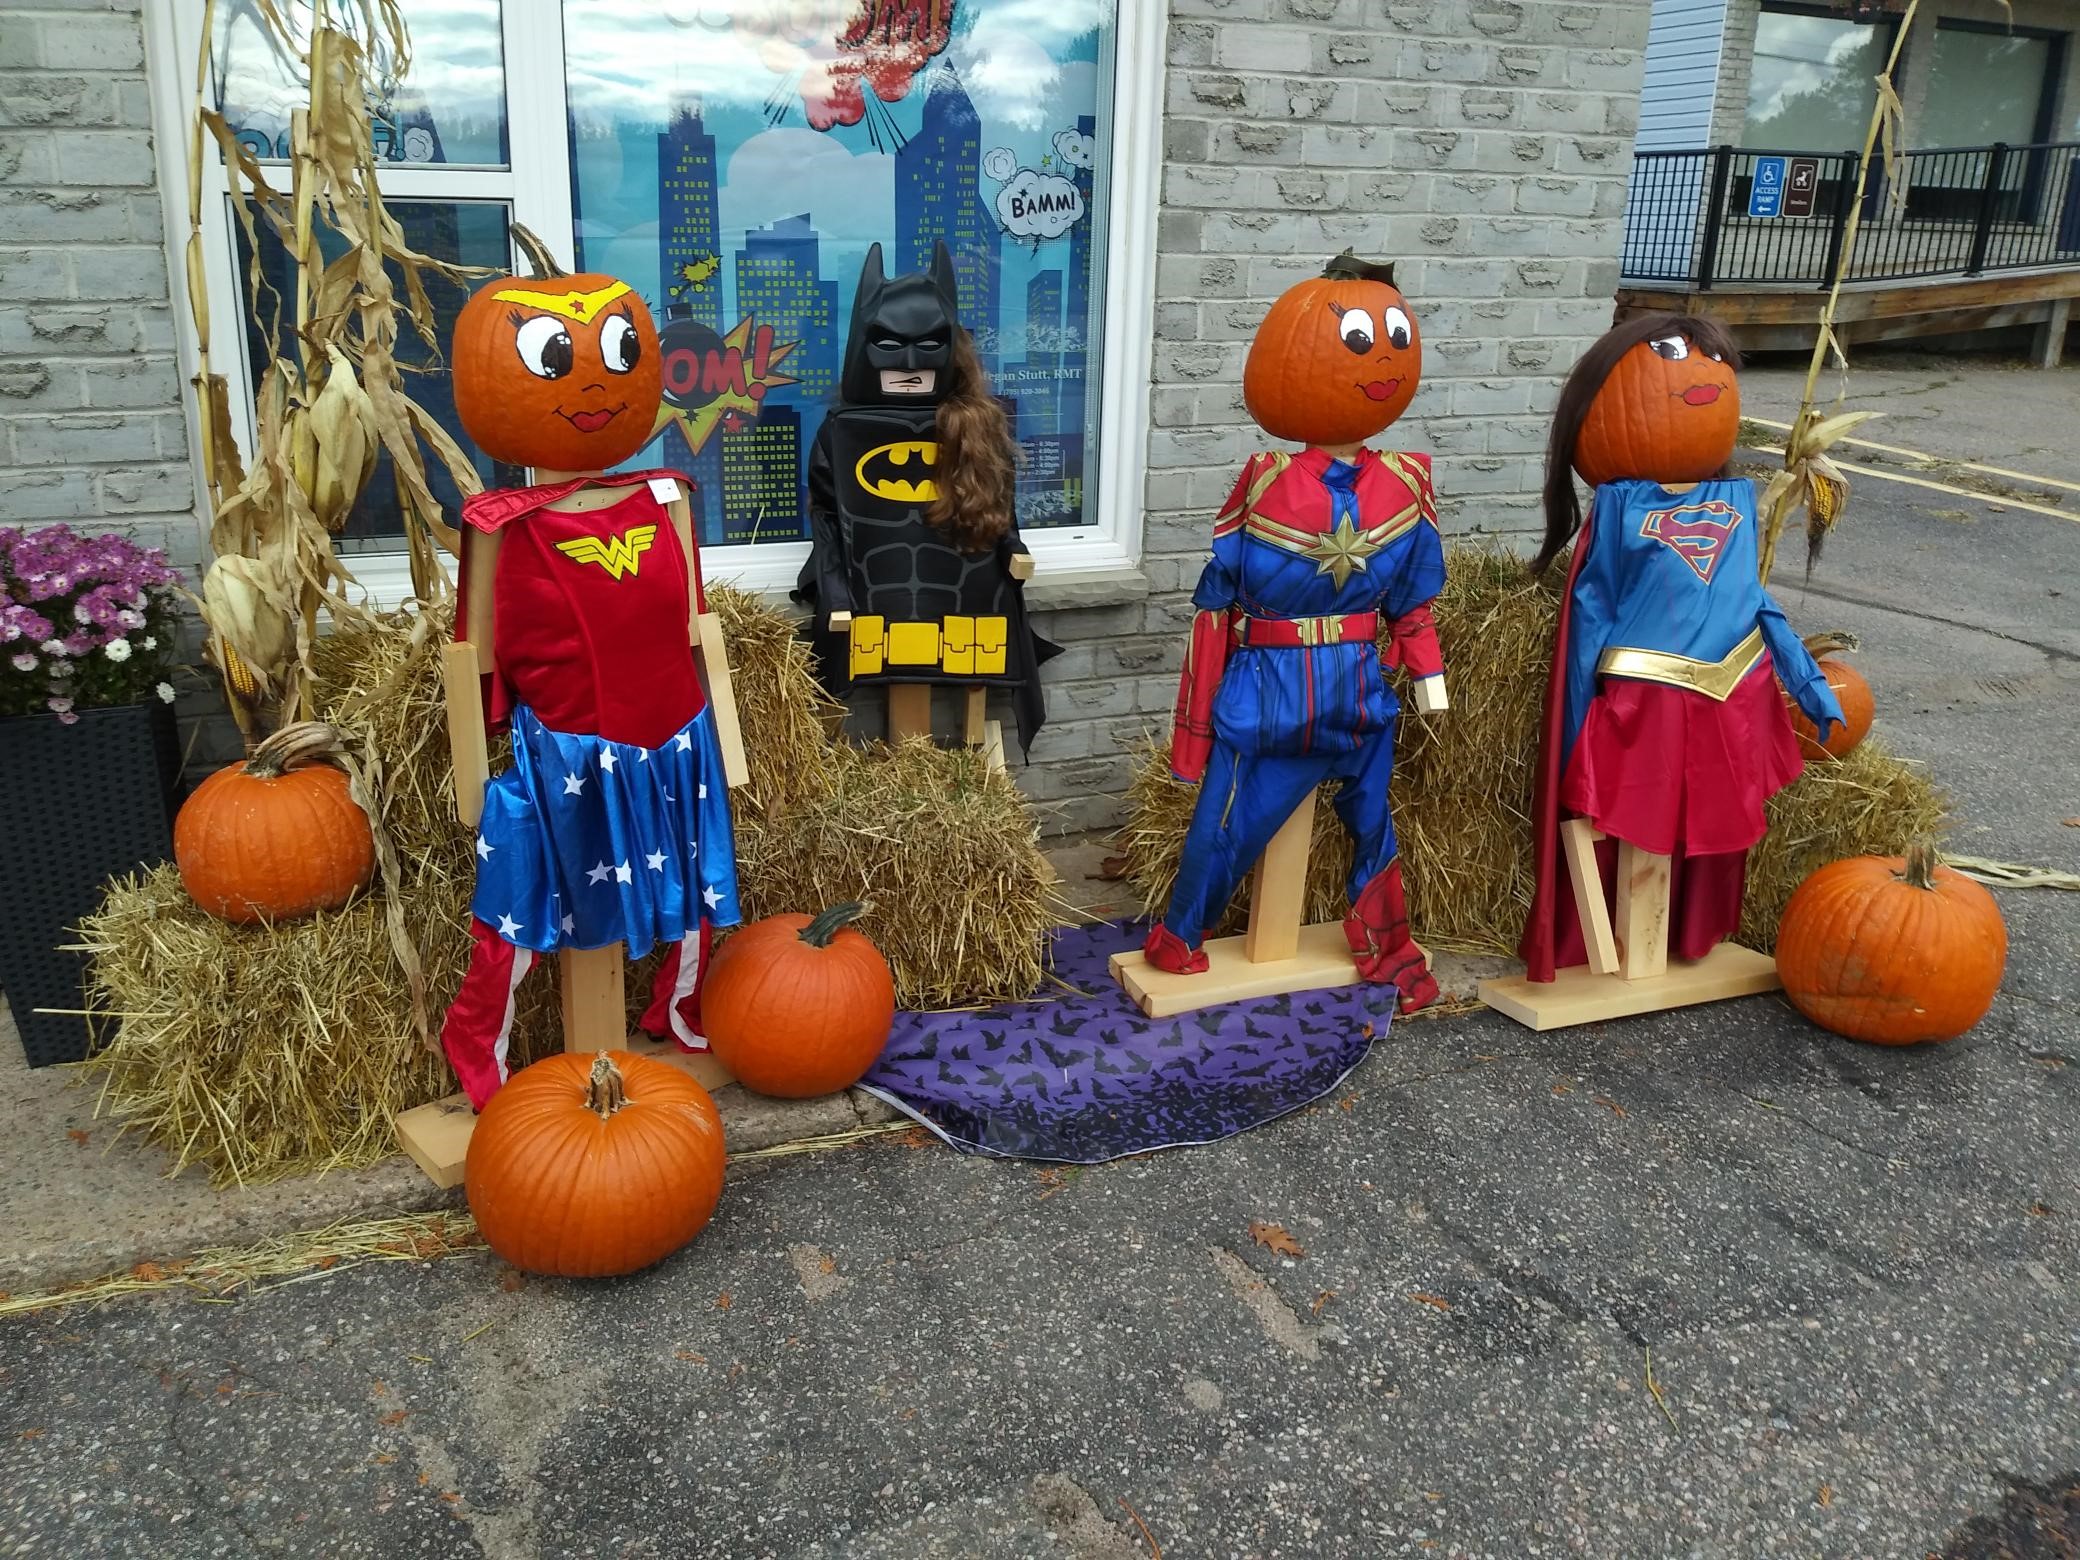 Image of pumpkin folk dressed as super heros